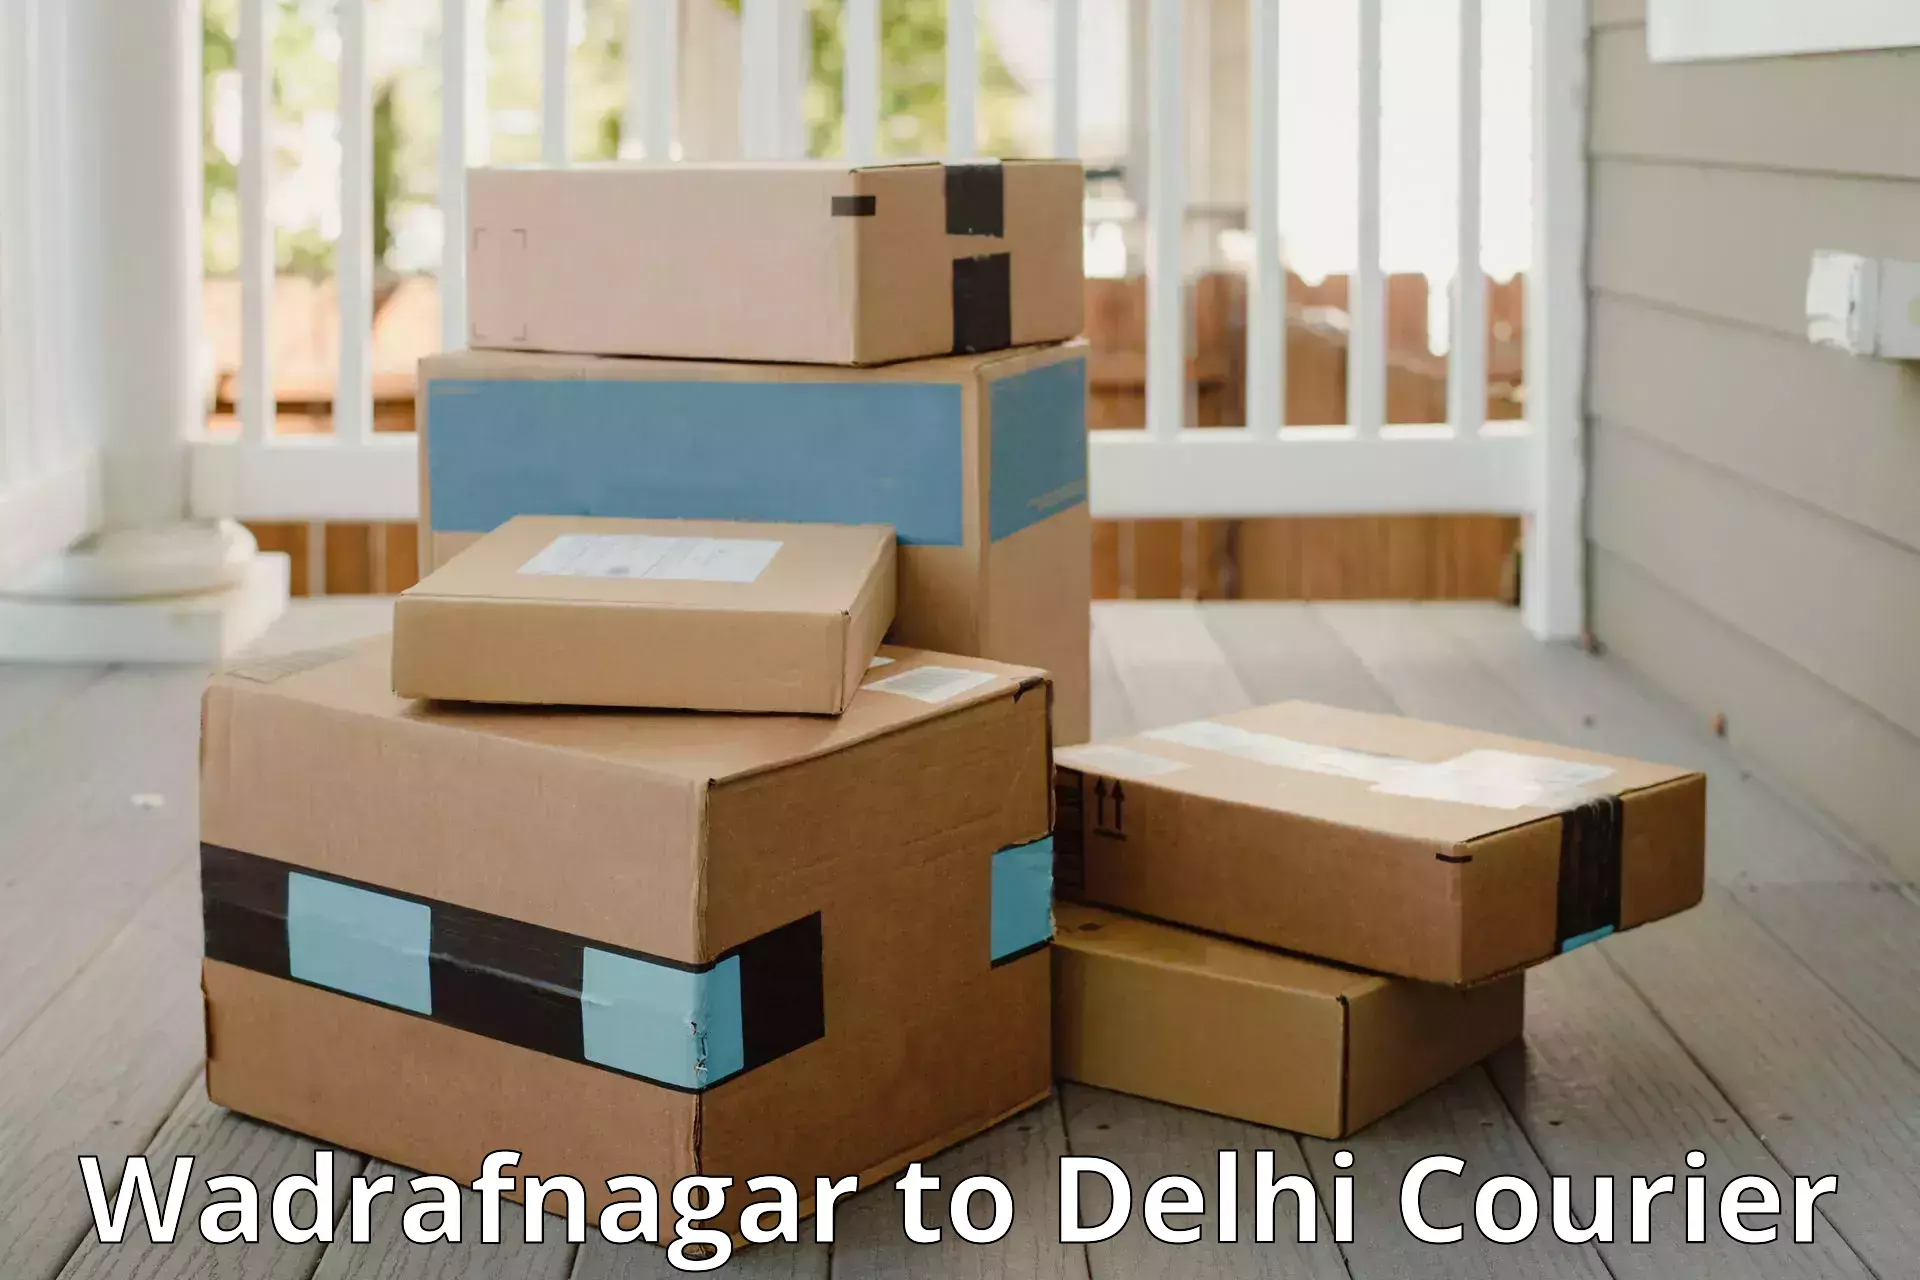 Global baggage shipping Wadrafnagar to NIT Delhi